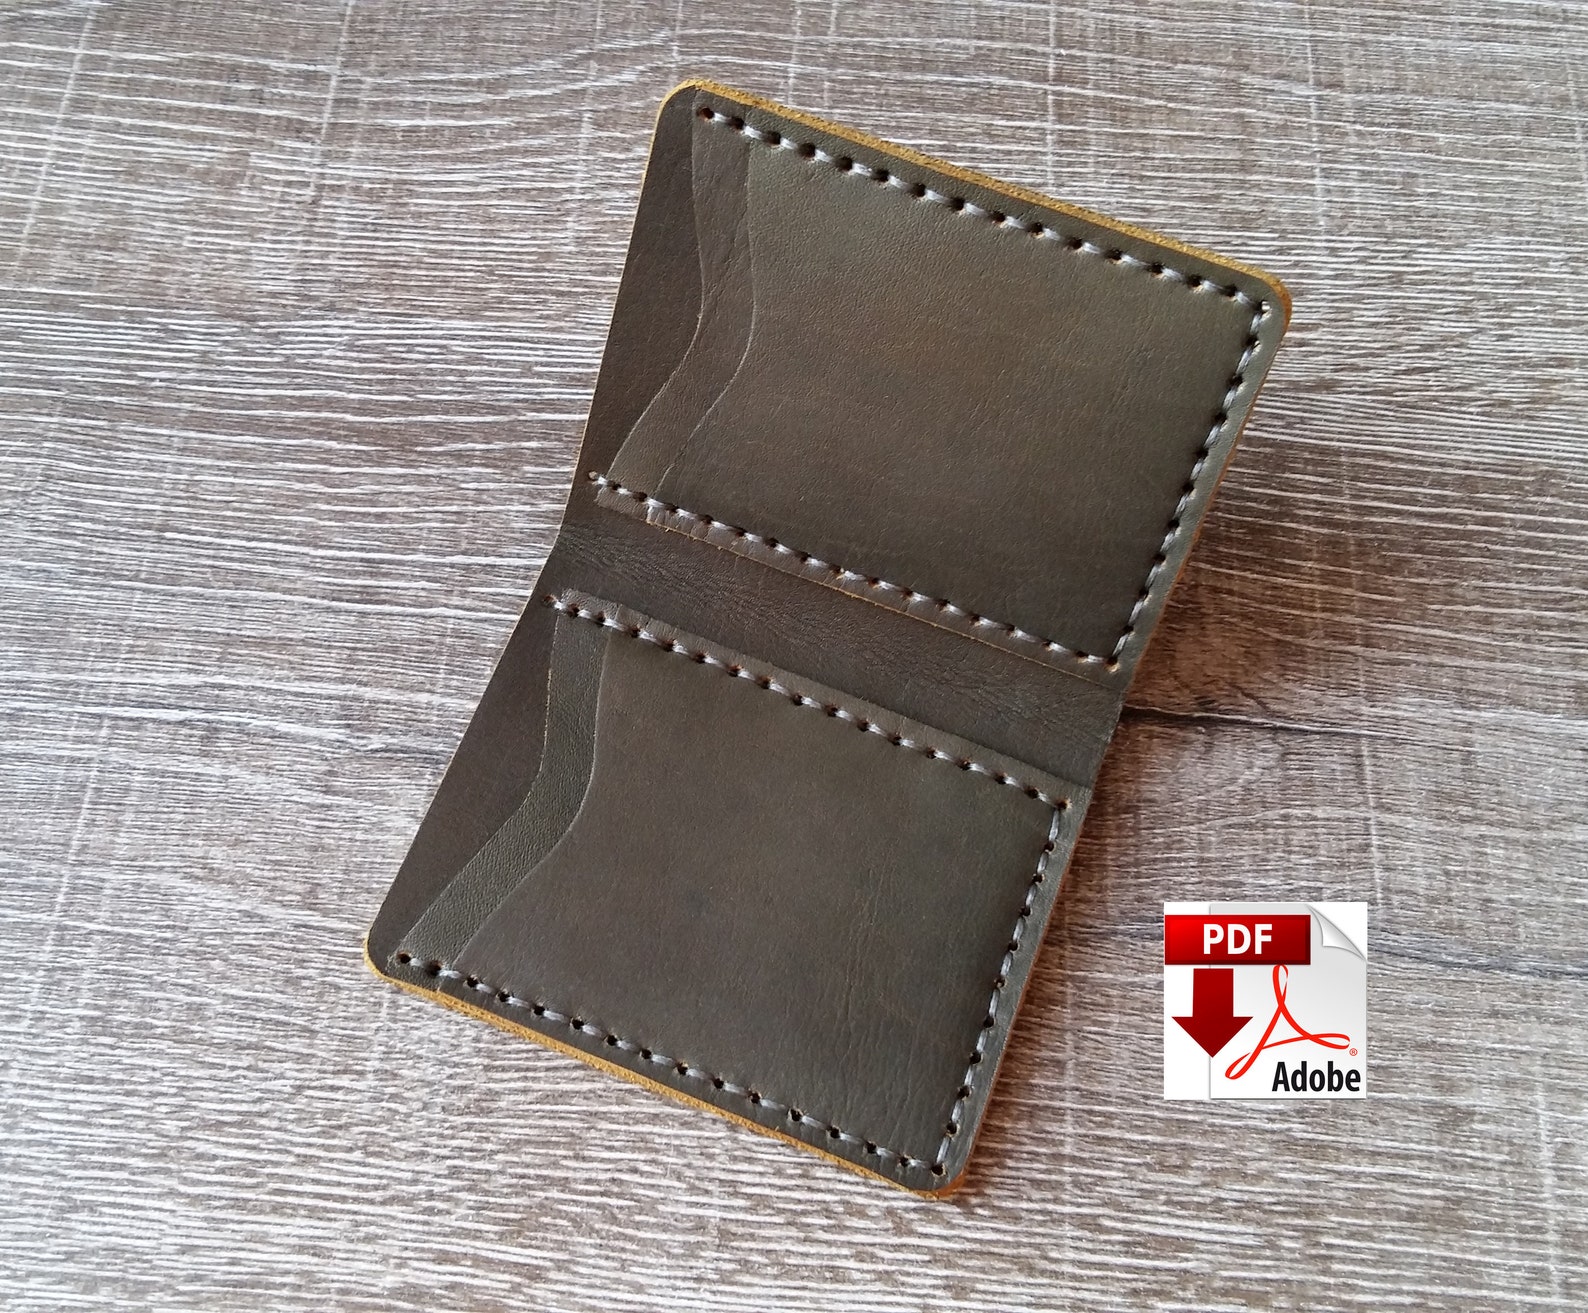 PDF Wallet Pattern Leather Bifold Wallet Minimalist Wallet - Etsy